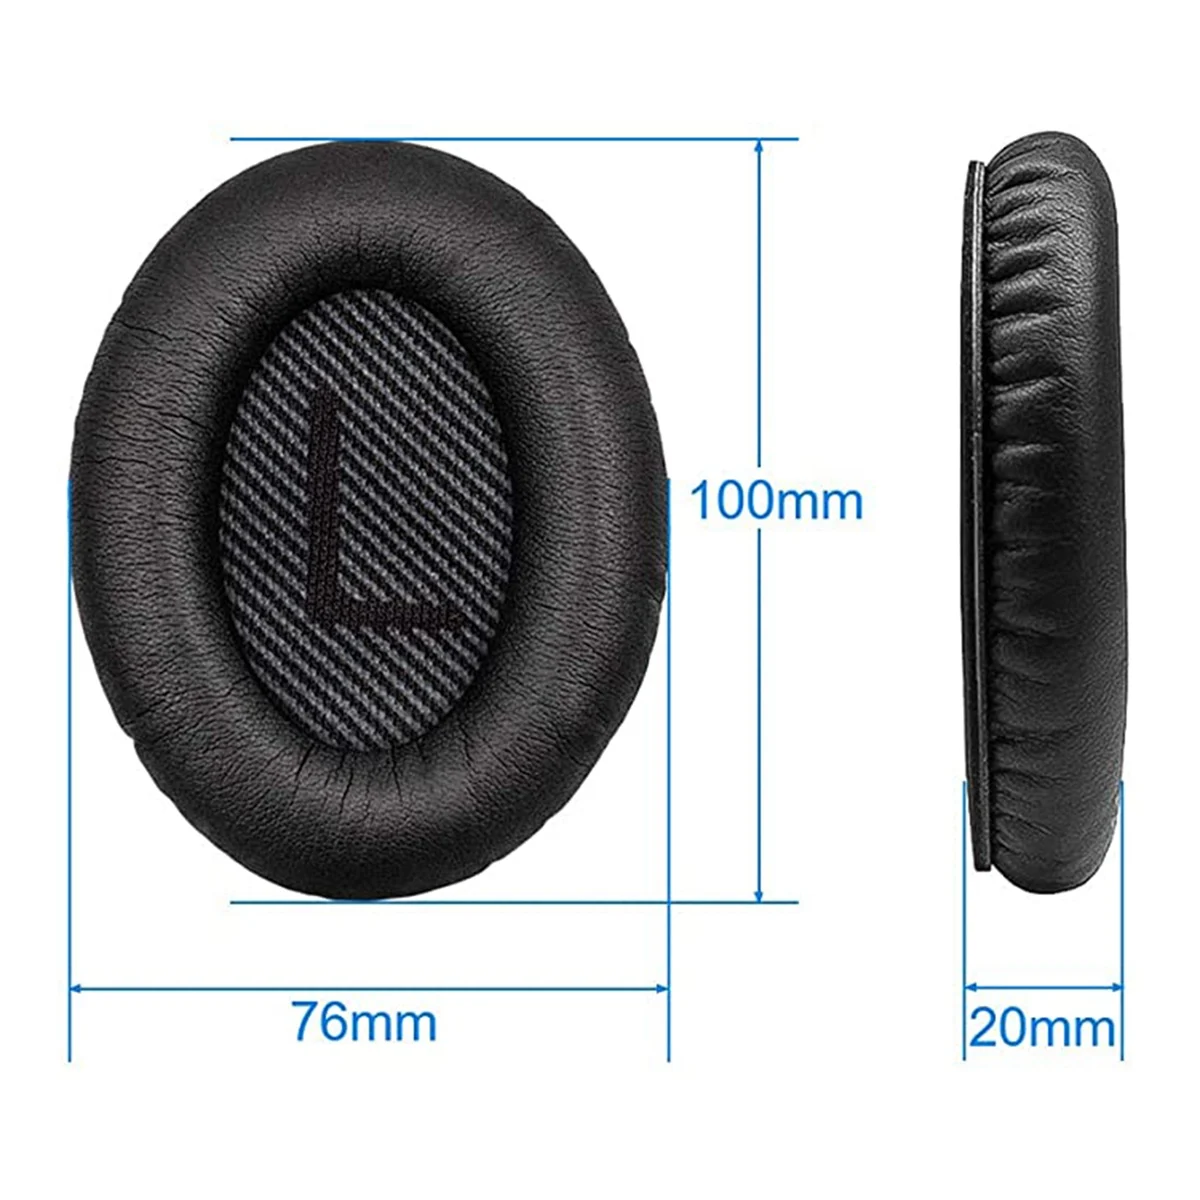 Replacement Earpads for Quiet Comfort 35 (QC35) and QuietComfort 35 II (QC35 II) Headphones(Blue) images - 6